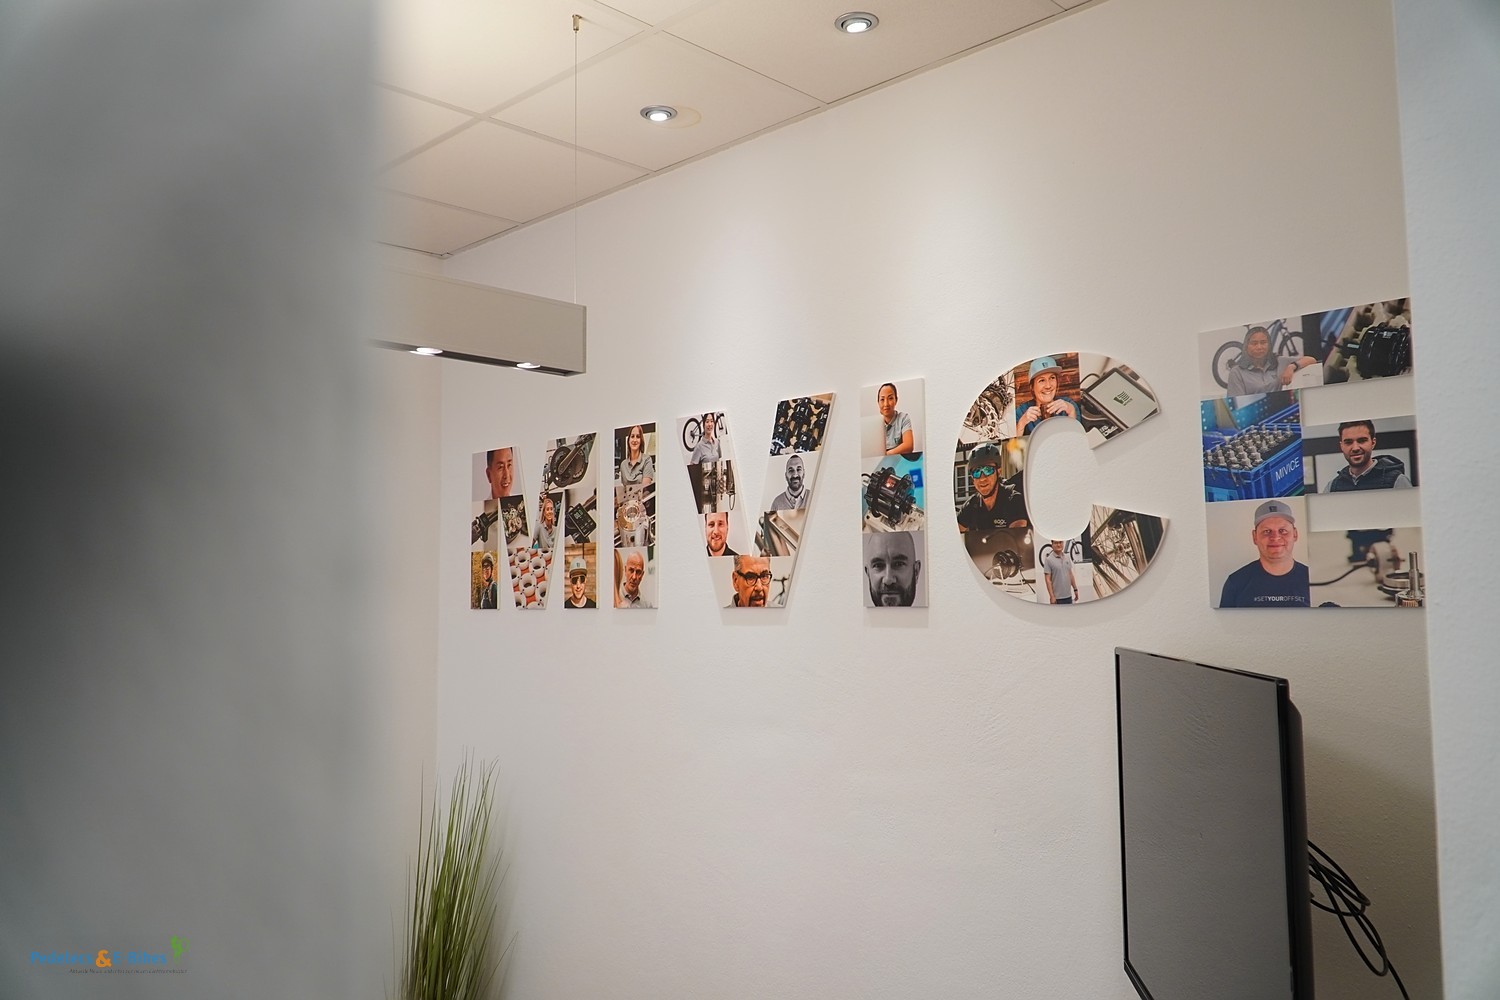 Mivice Europe GmbH Company Story